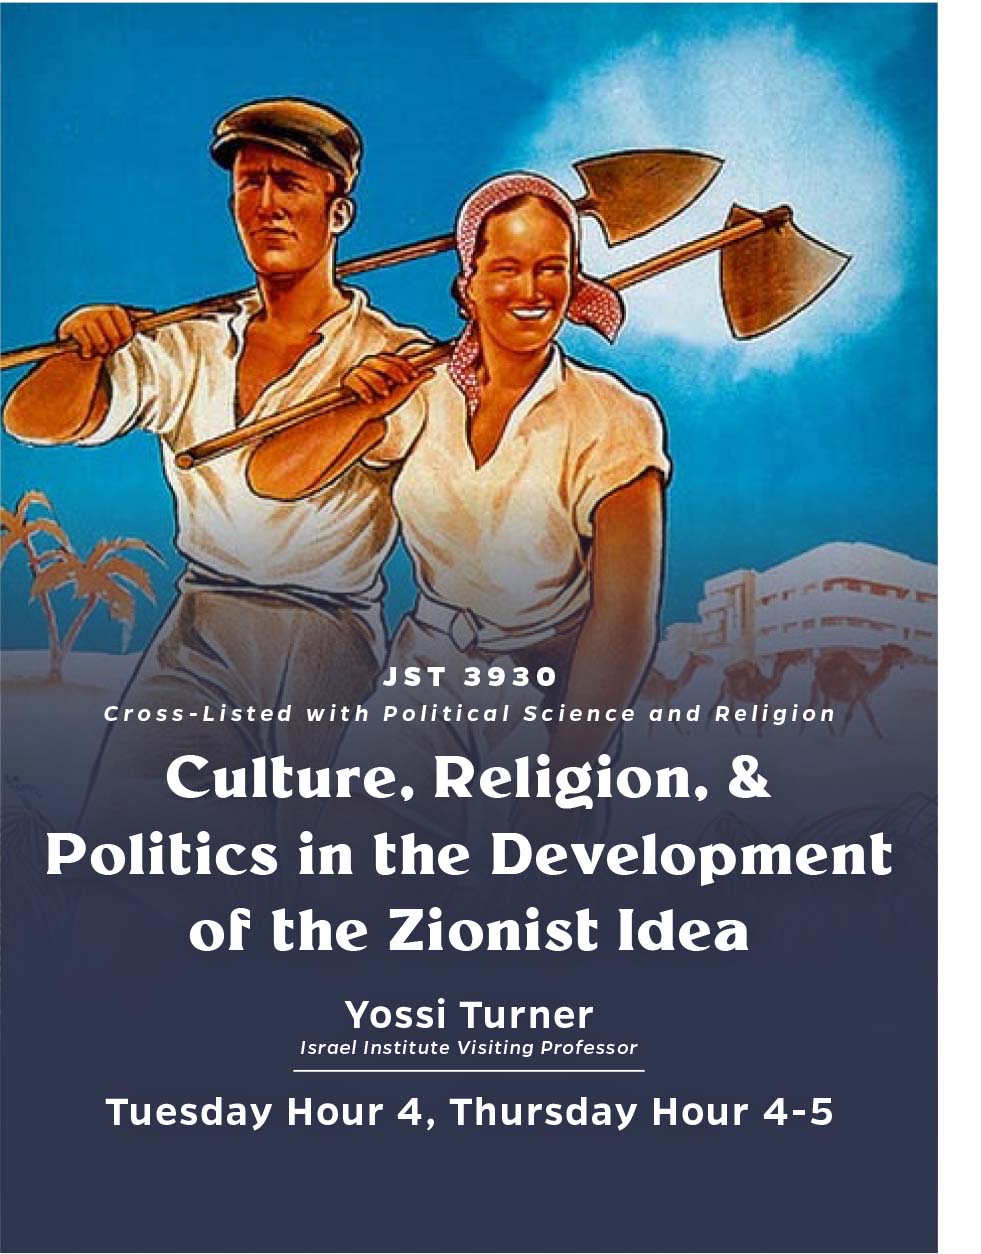 Culture, Religion, and Politics in the Development of the Zionist Idea